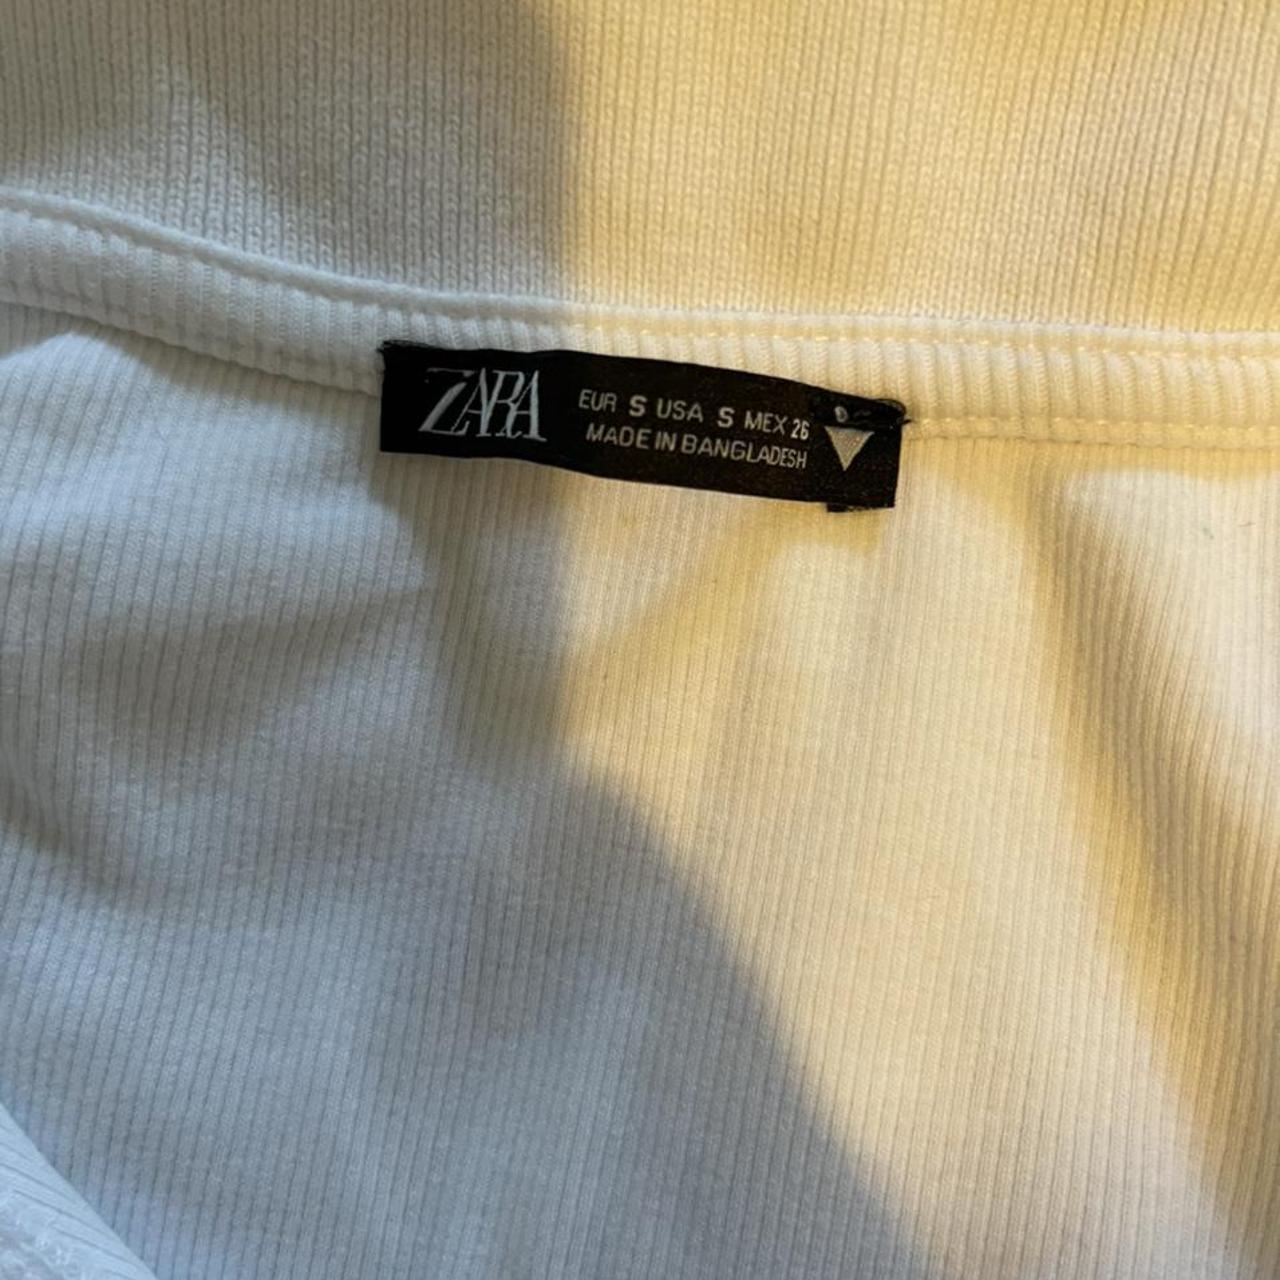 Zara T-shirt. Size Small - Depop